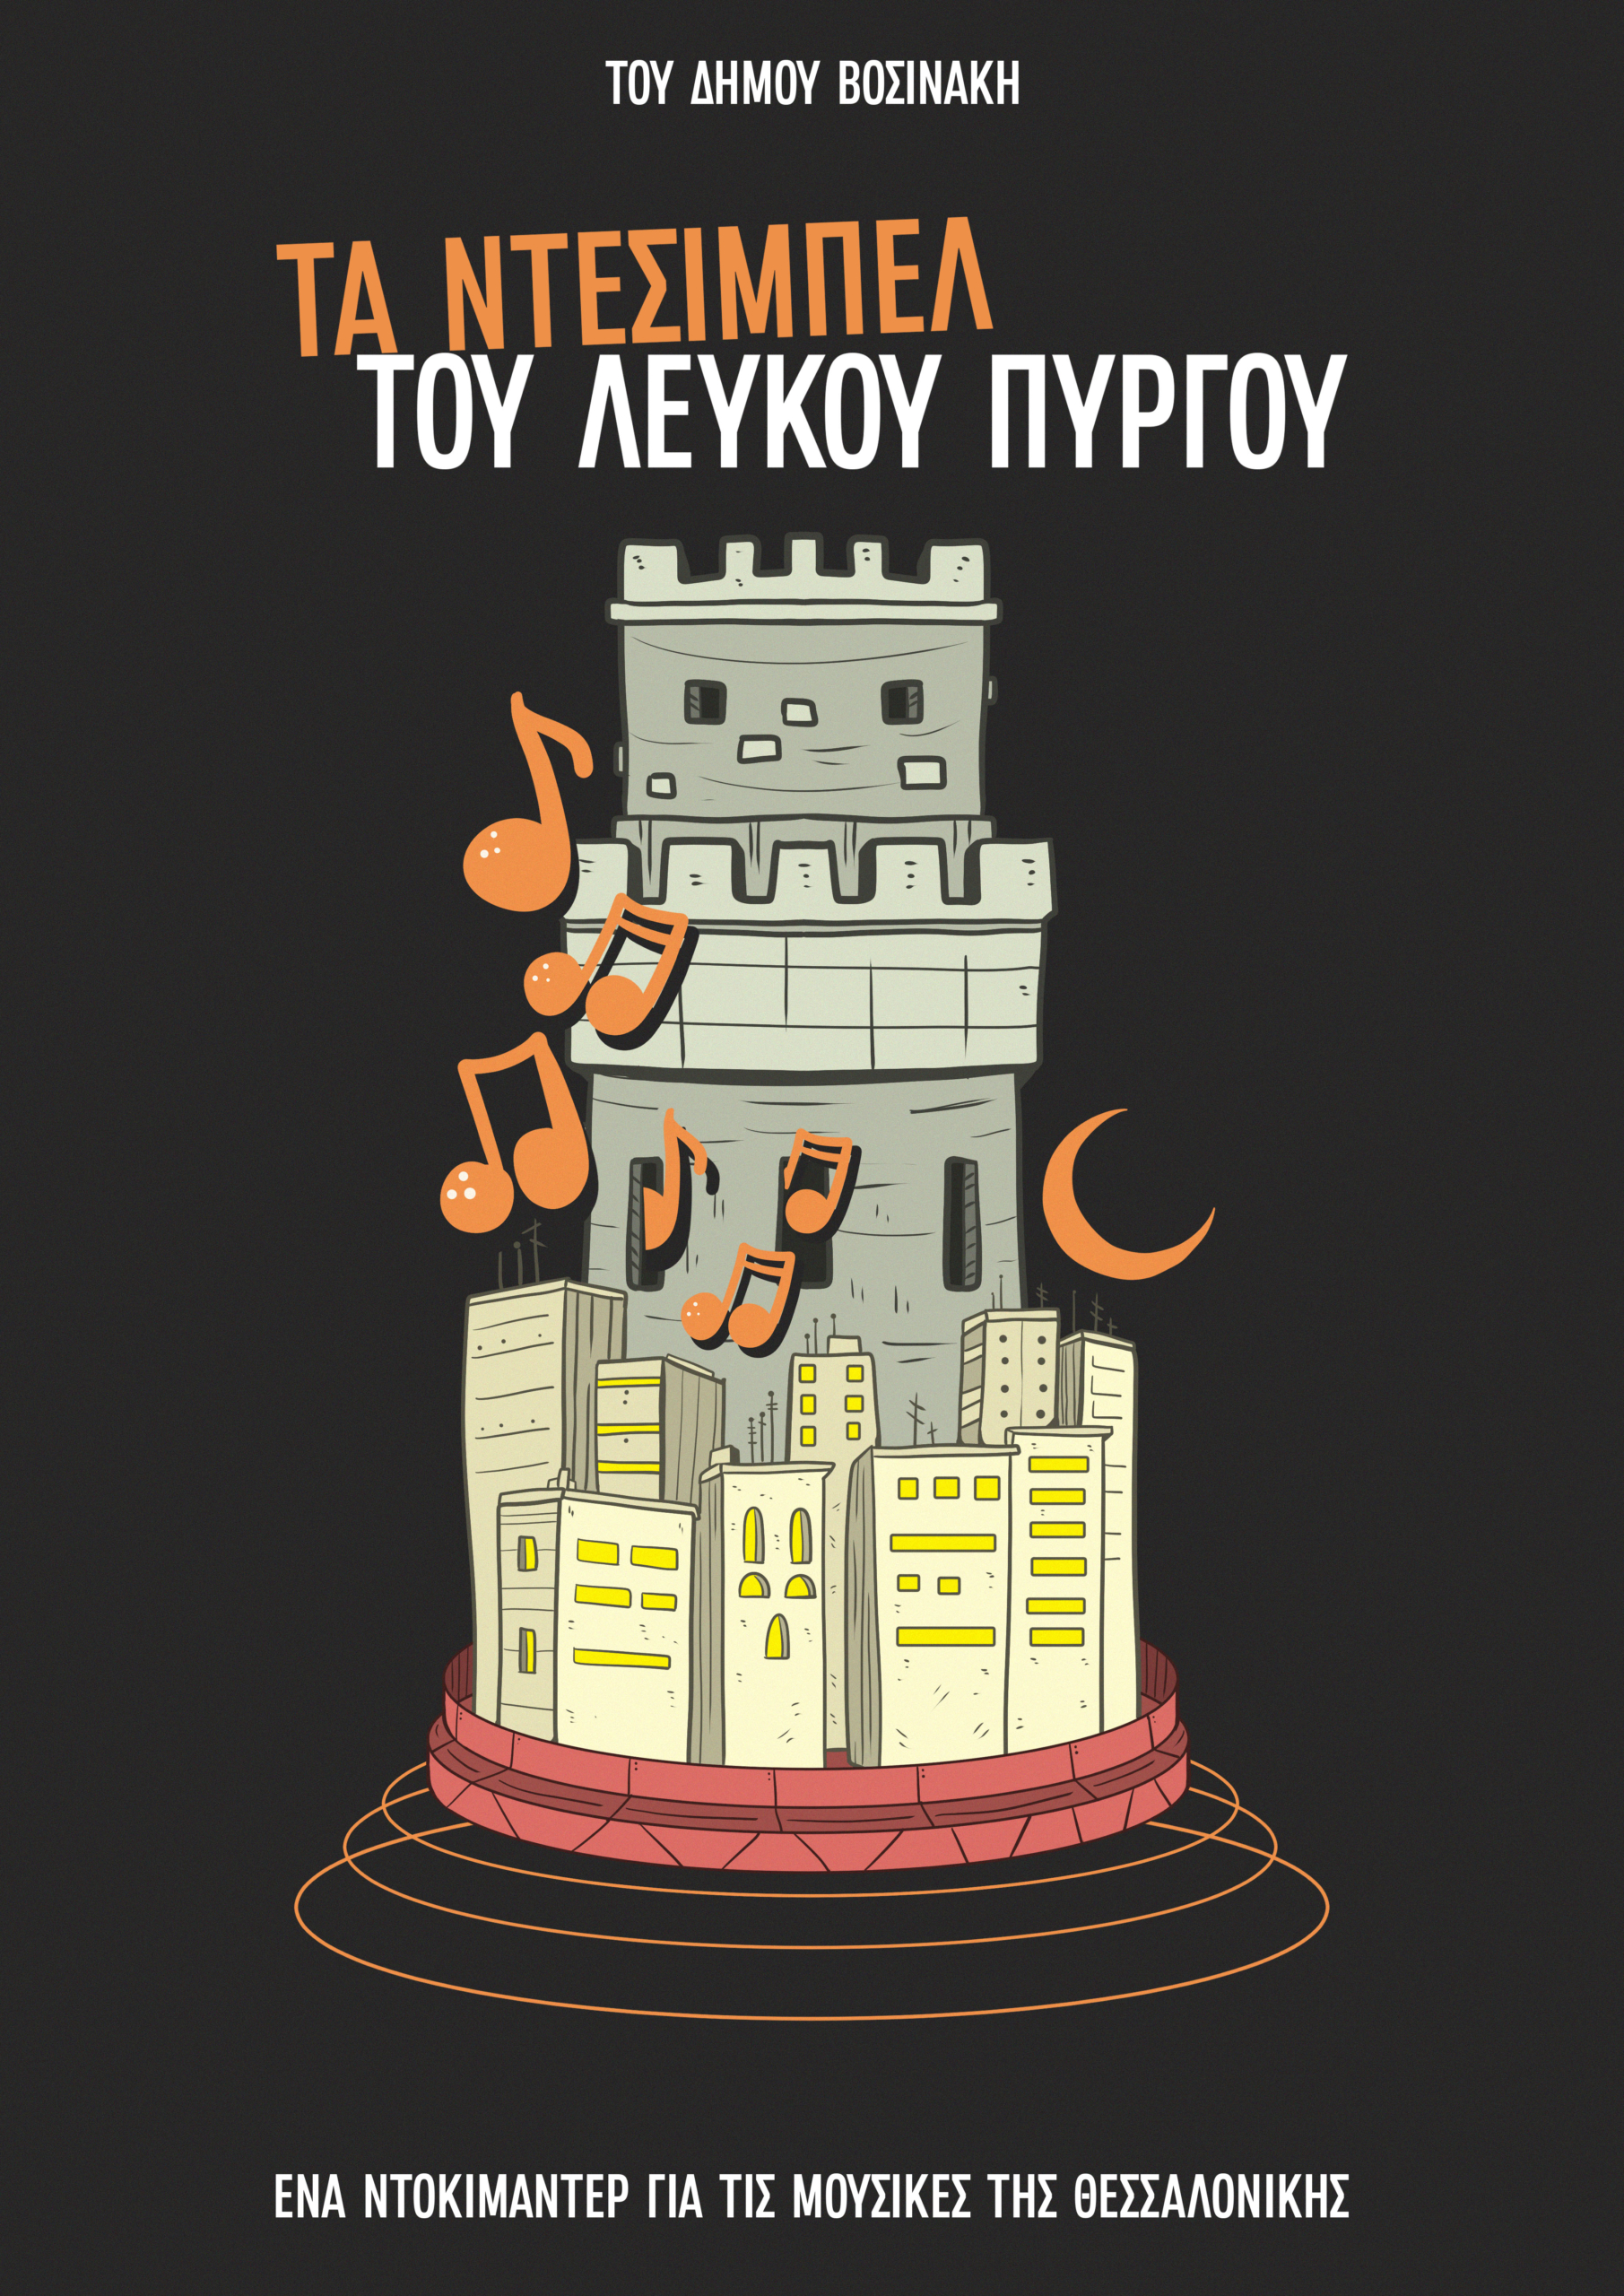 Η μουσική σκηνή της Θεσσαλονίκης: Ρεμπέτες, ροκ και ρείβερς σε ένα μουσικό ντοκιμαντέρ"
